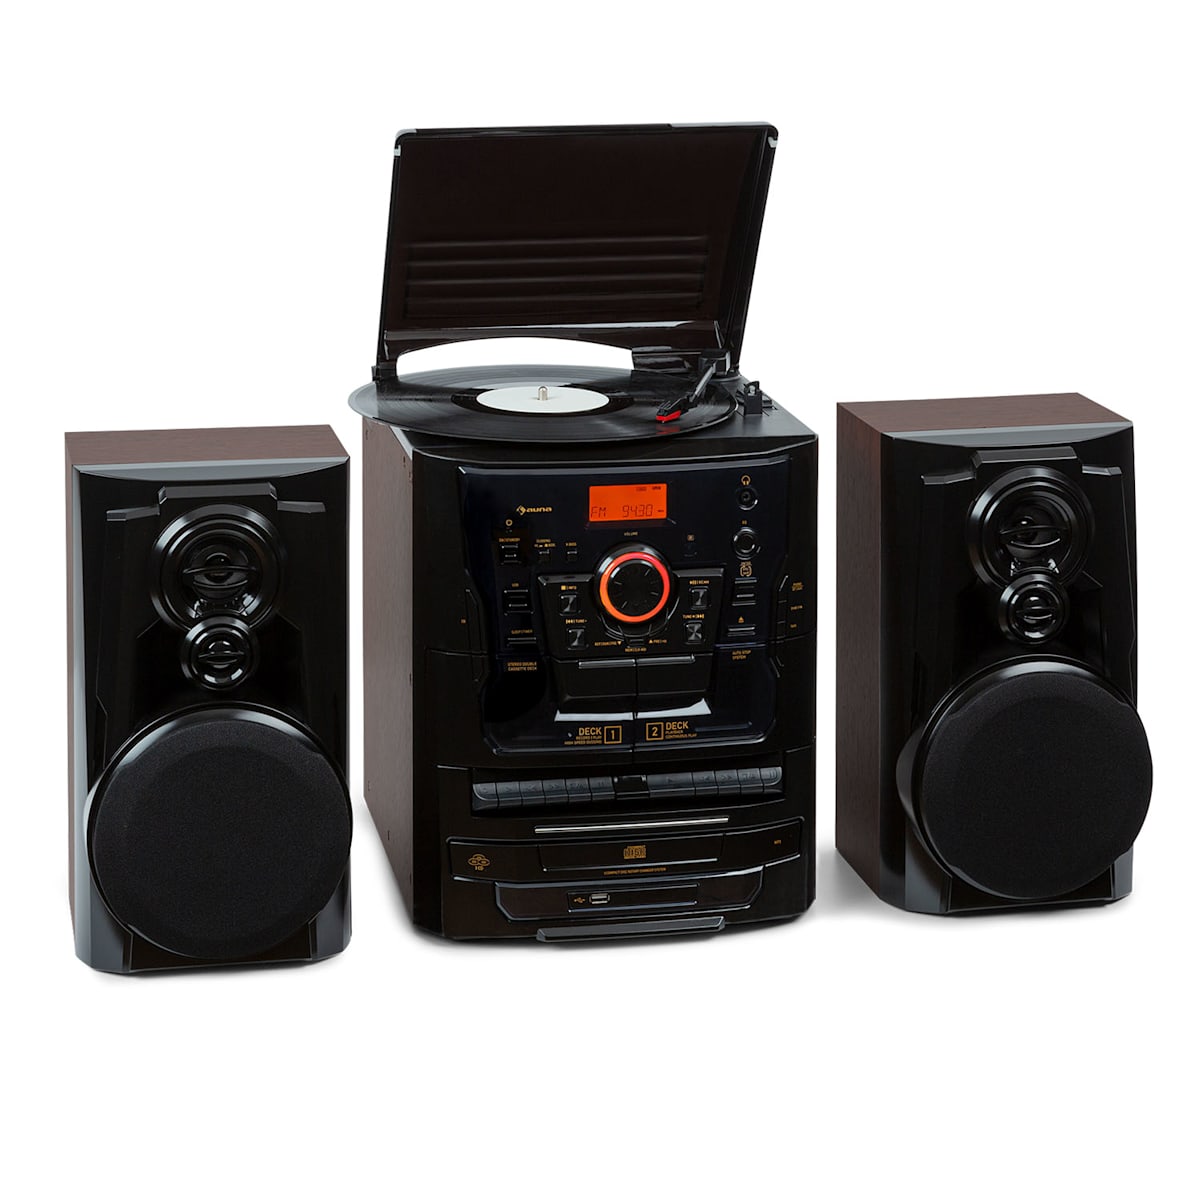 388 Franklin DAB+ StereoSystem Kompaktanlage Musikanlage, Plattenspieler, 3-fach-CD-Player, doppeltes Kassettendeck, Bluetooth, DAB+/FM Radiotuner, USB-Port: Wiedergabe von MP3-Dateien